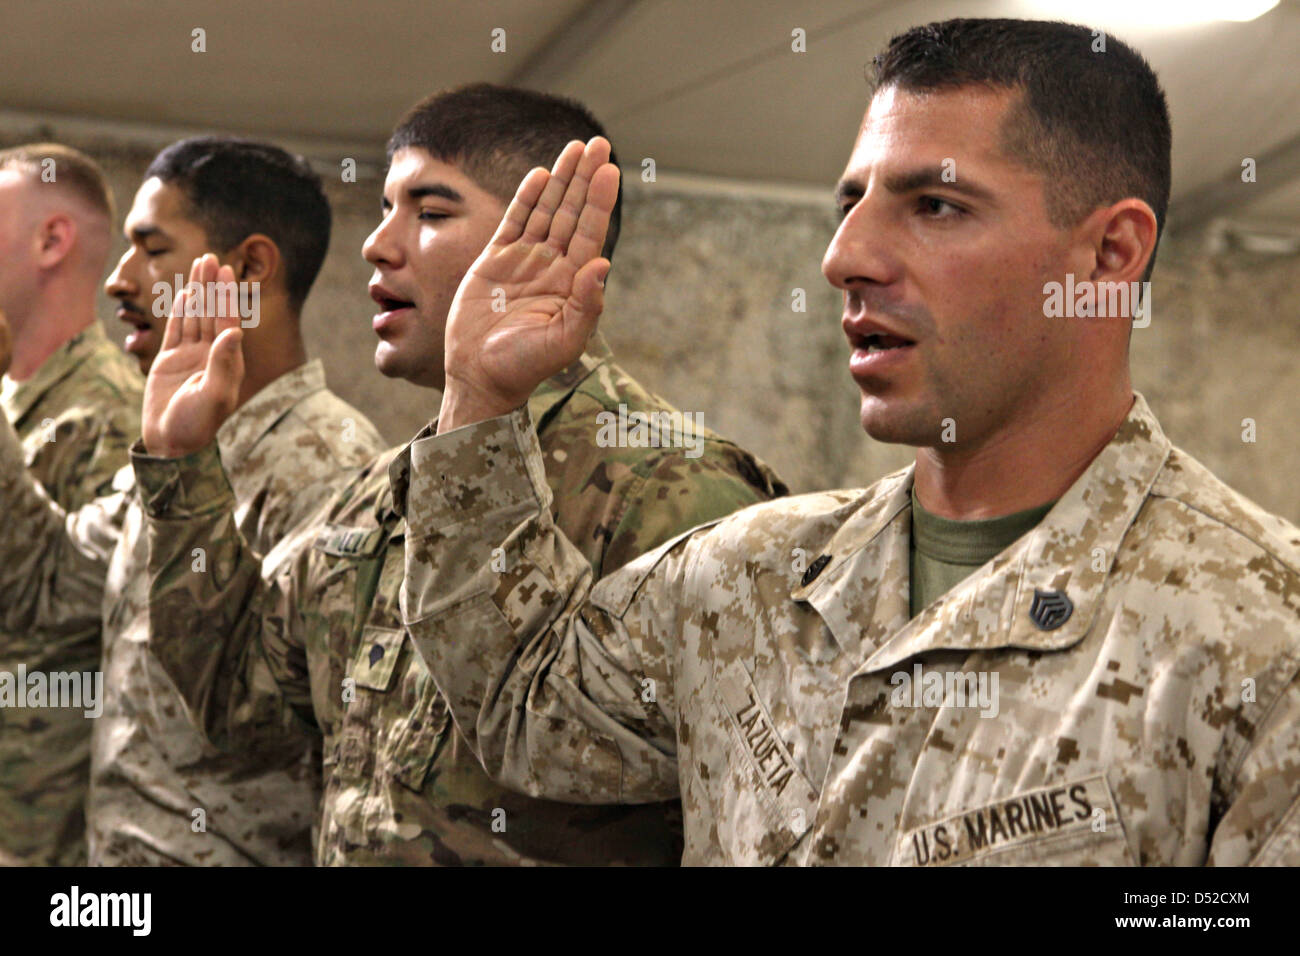 US Marines Eid der Staatsbürgerschaft der Vereinigten Staaten während einer Einbürgerung Zeremonie 1. März 2013 in Kandahar Flugplatz, Afghanistan. Stockfoto